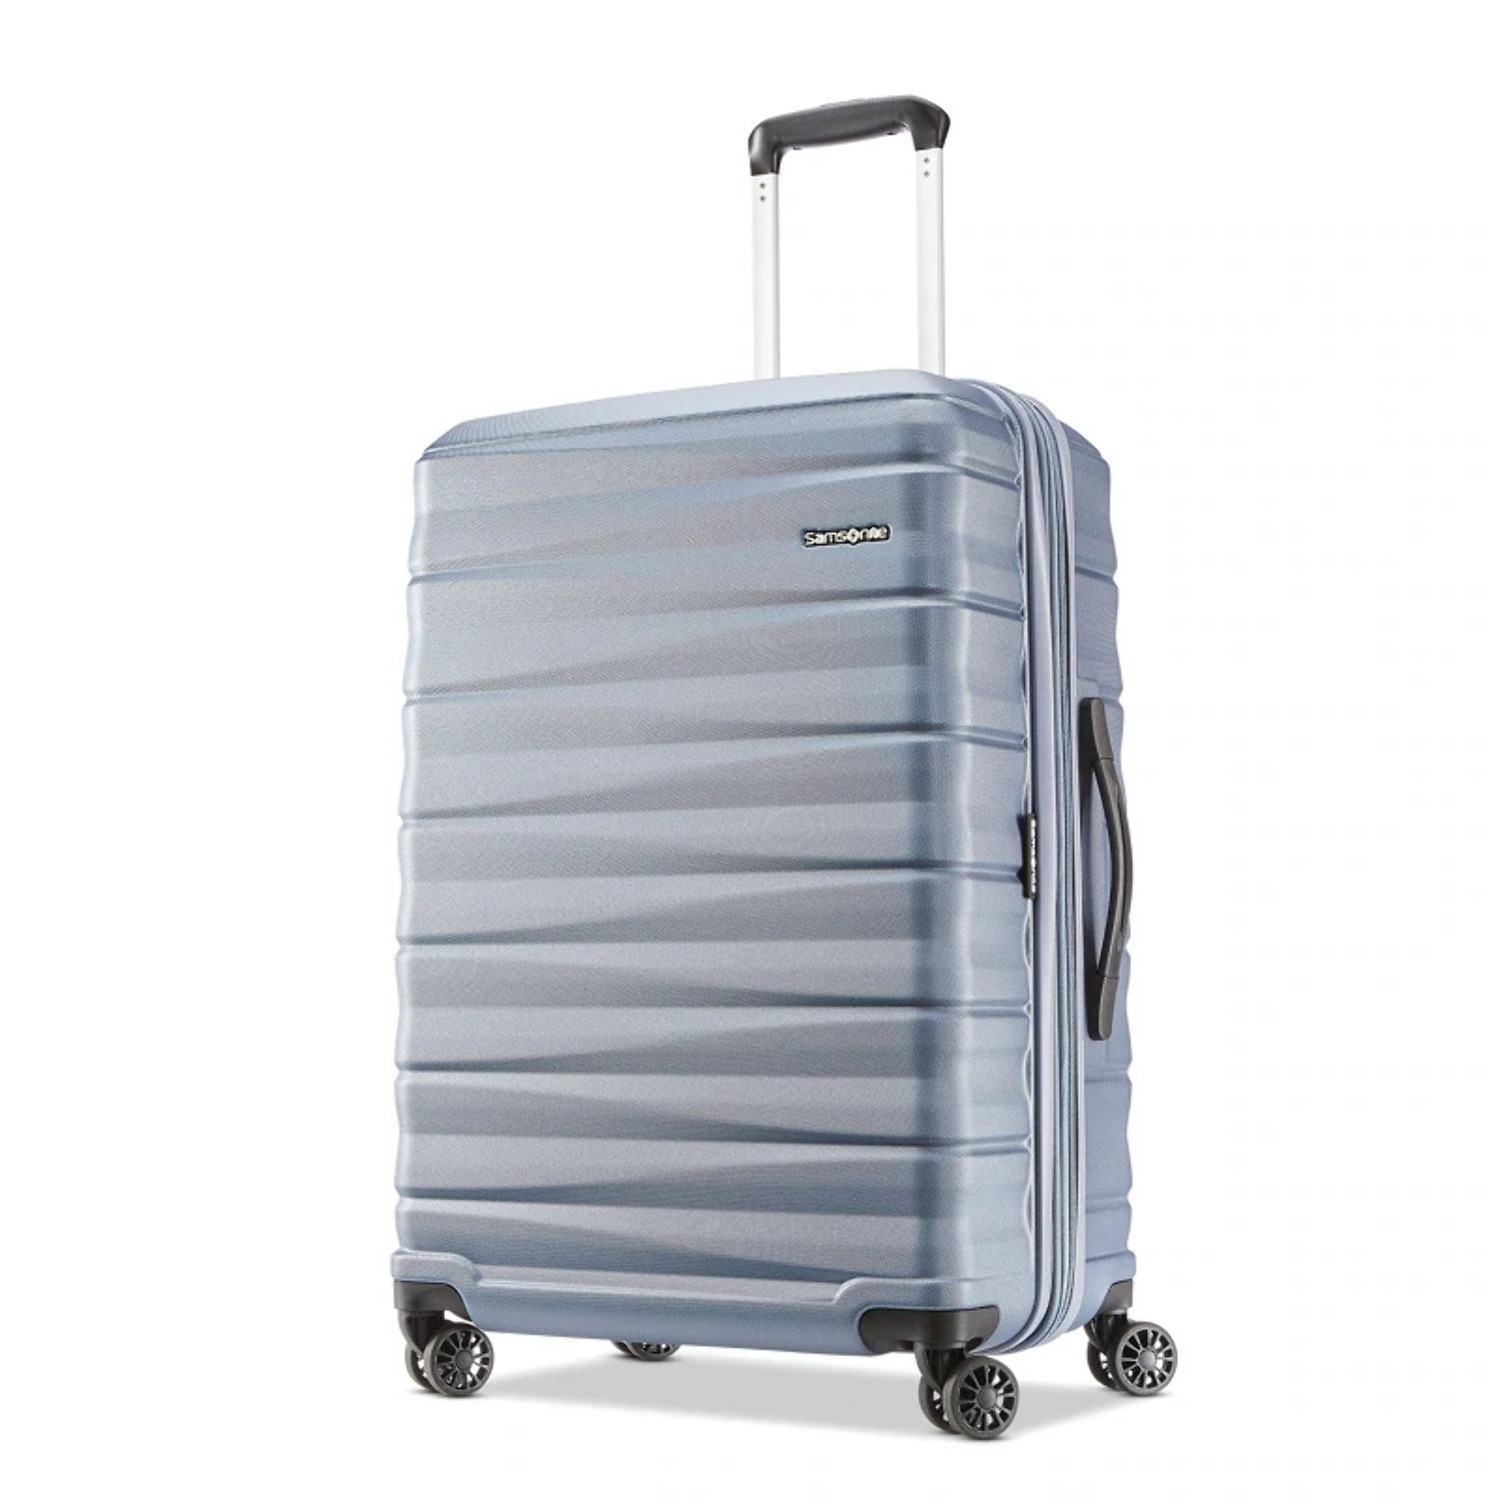 Samsonite Kingsbury Hardside Suitcase 2-Piece Luggage Set - Slate Blue - New - image 3 of 11